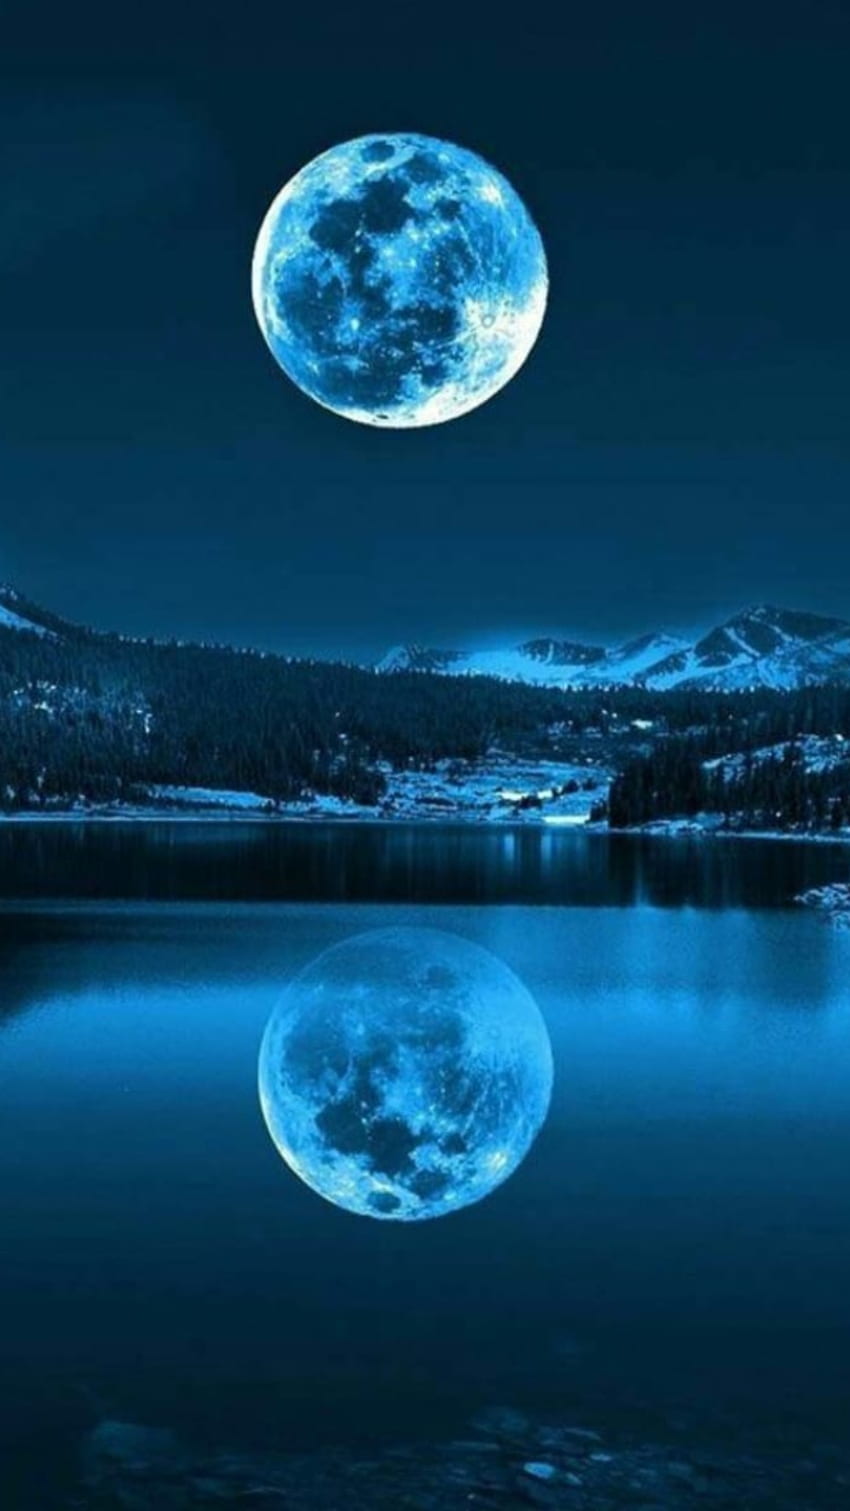 rzeka, niebieski księżyc i księżyc - Tapeta na telefon HD